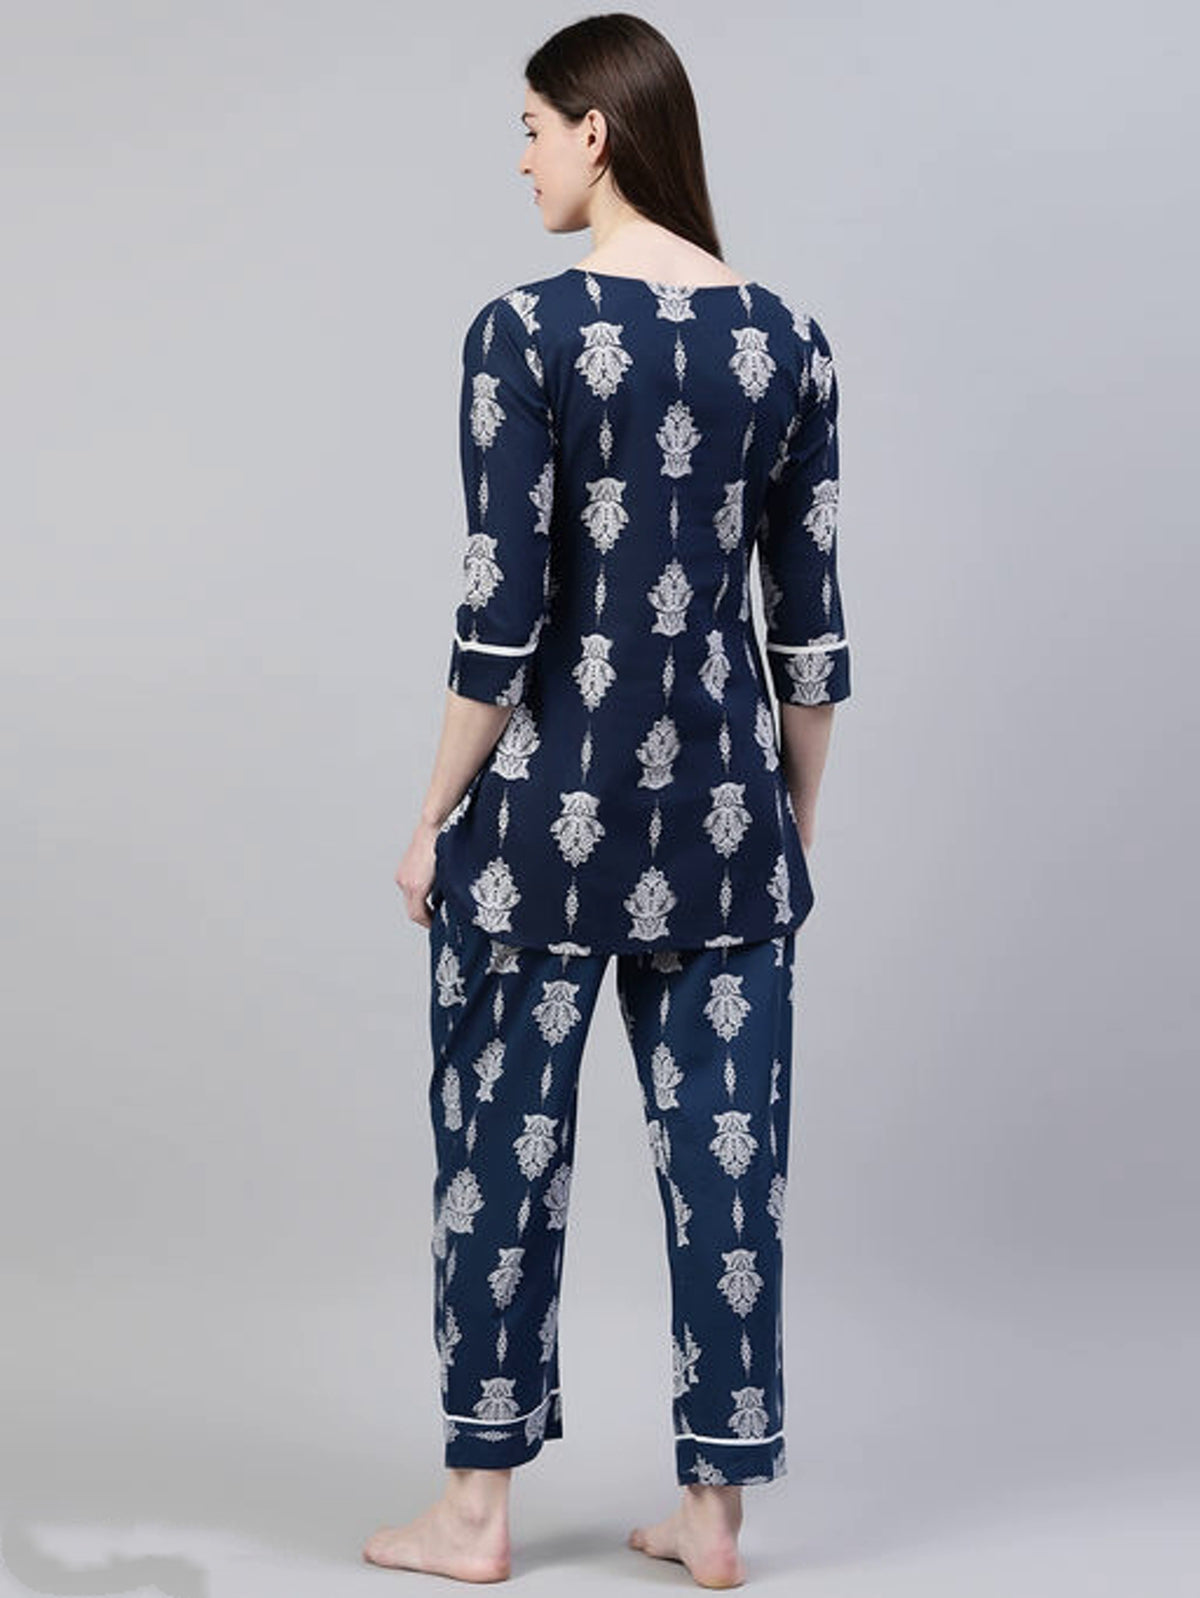 Women's Floral Print Cotton Night Suit Set